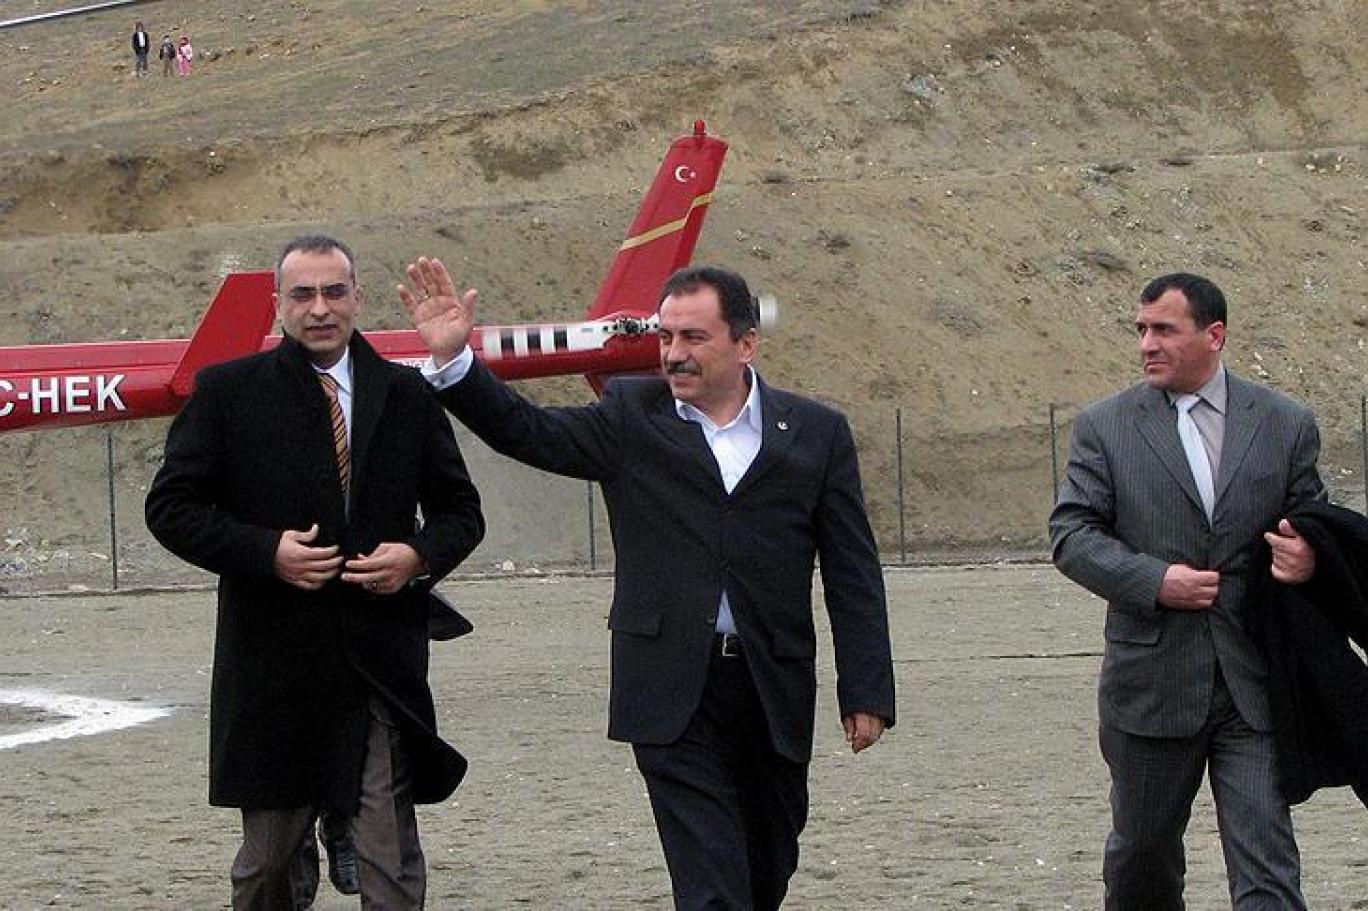 Muhsin Yazıcıoğlunun ölümüyle ilgili yeni gelişme! Helikopteri askeri jetle takip edildi iddiası! FETÖcü pilot ve Adil Öksüz detayı...